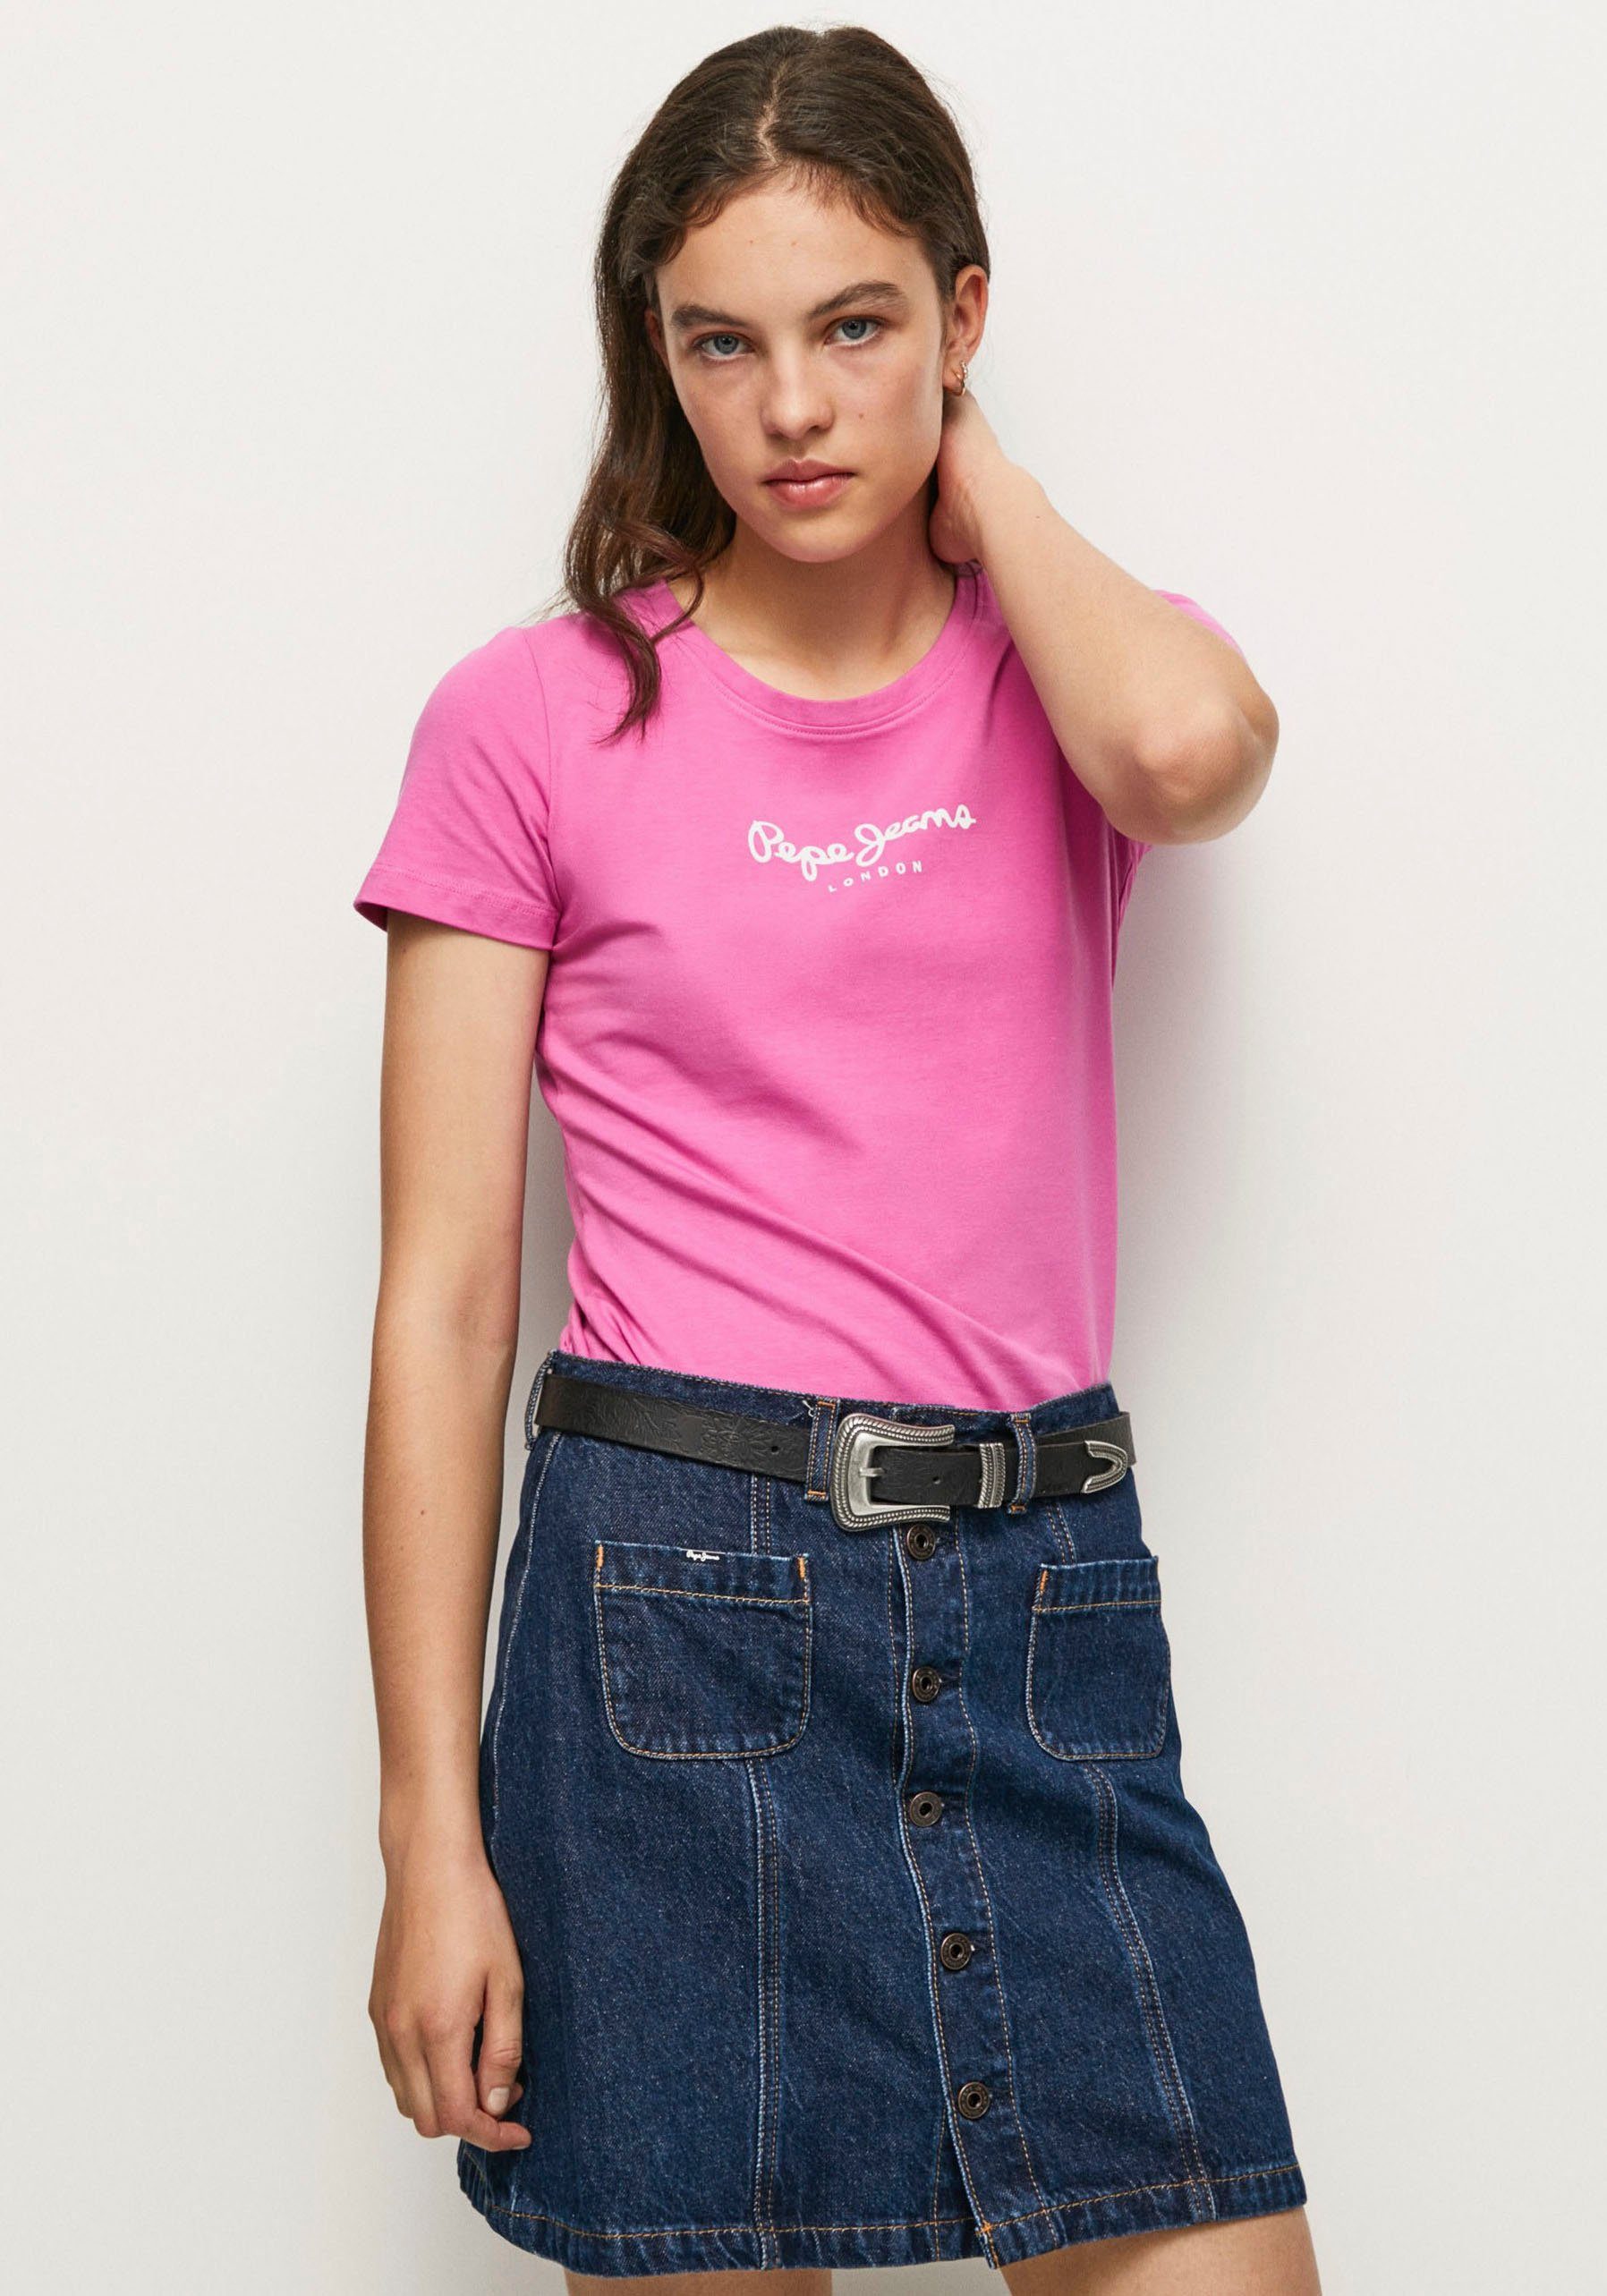 Pepe Jeans T-Shirt ROSE und 363ENGLISH in schlichter Passform in VIOLETTE Optik unifarbener figurbetonter